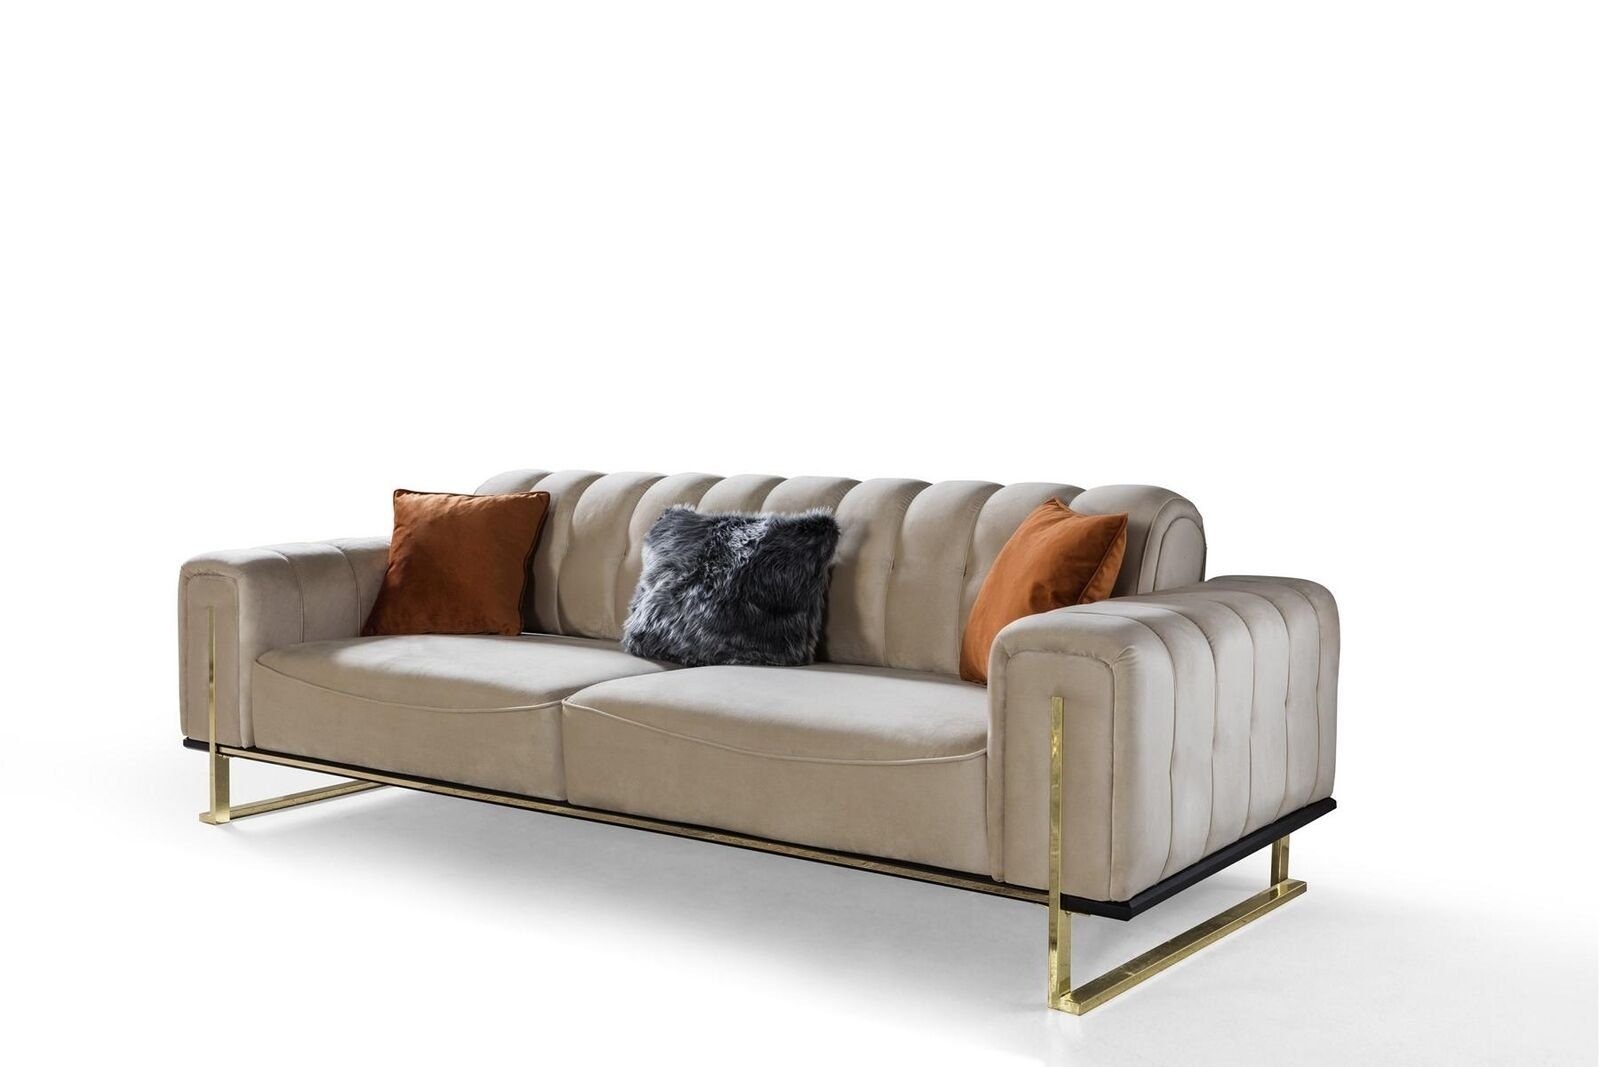 JVmoebel 3-Sitzer Sofa 3 Sitzer Modern Möbel Beige Farbe Wohnzimmer Luxus Couchen, 1 Teile, Made in Europa